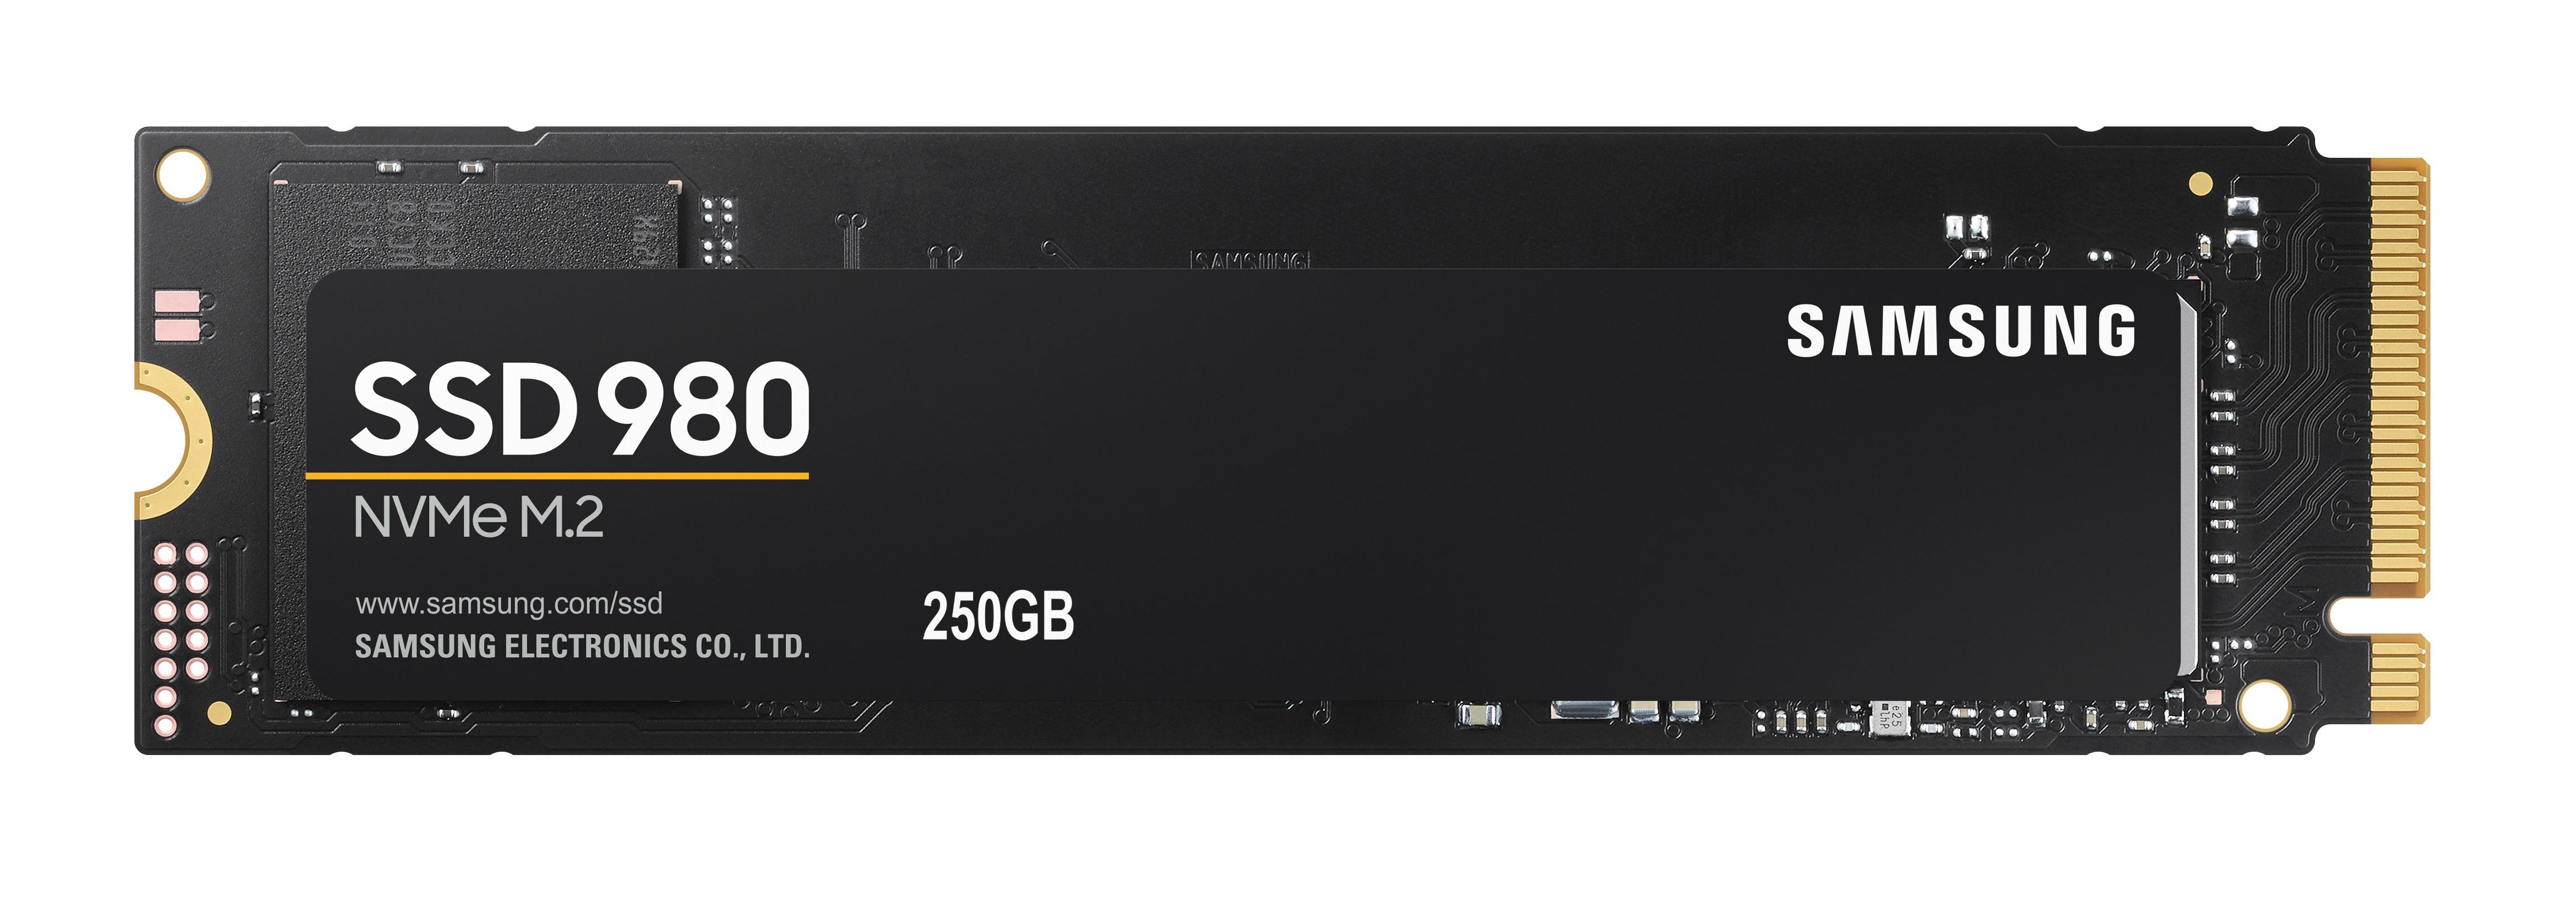 STOCKAGE SSD M.2 PCIe 3.0 NVMe/250Go/Samsung 980 à 59.9